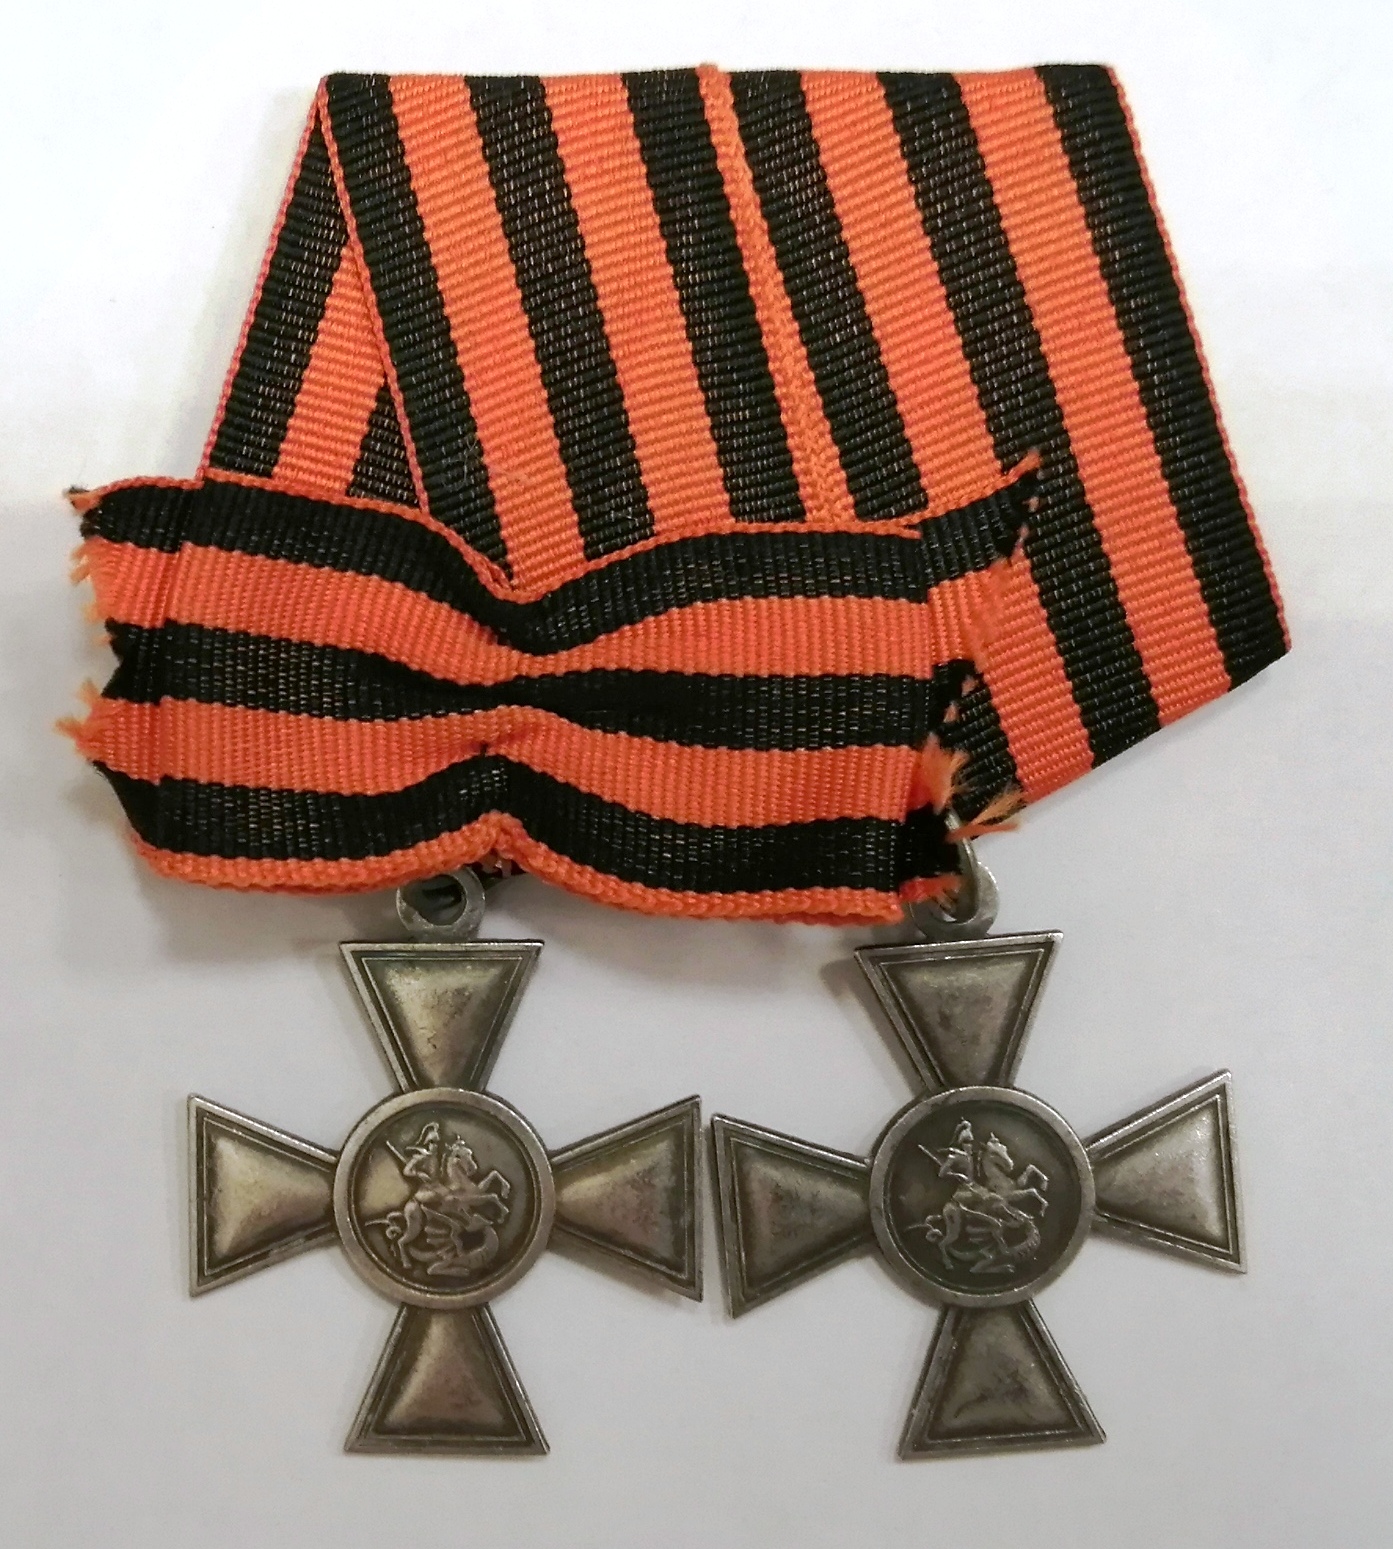 Колодка георгиевского креста 3 и 4-й степеней. Реплика.